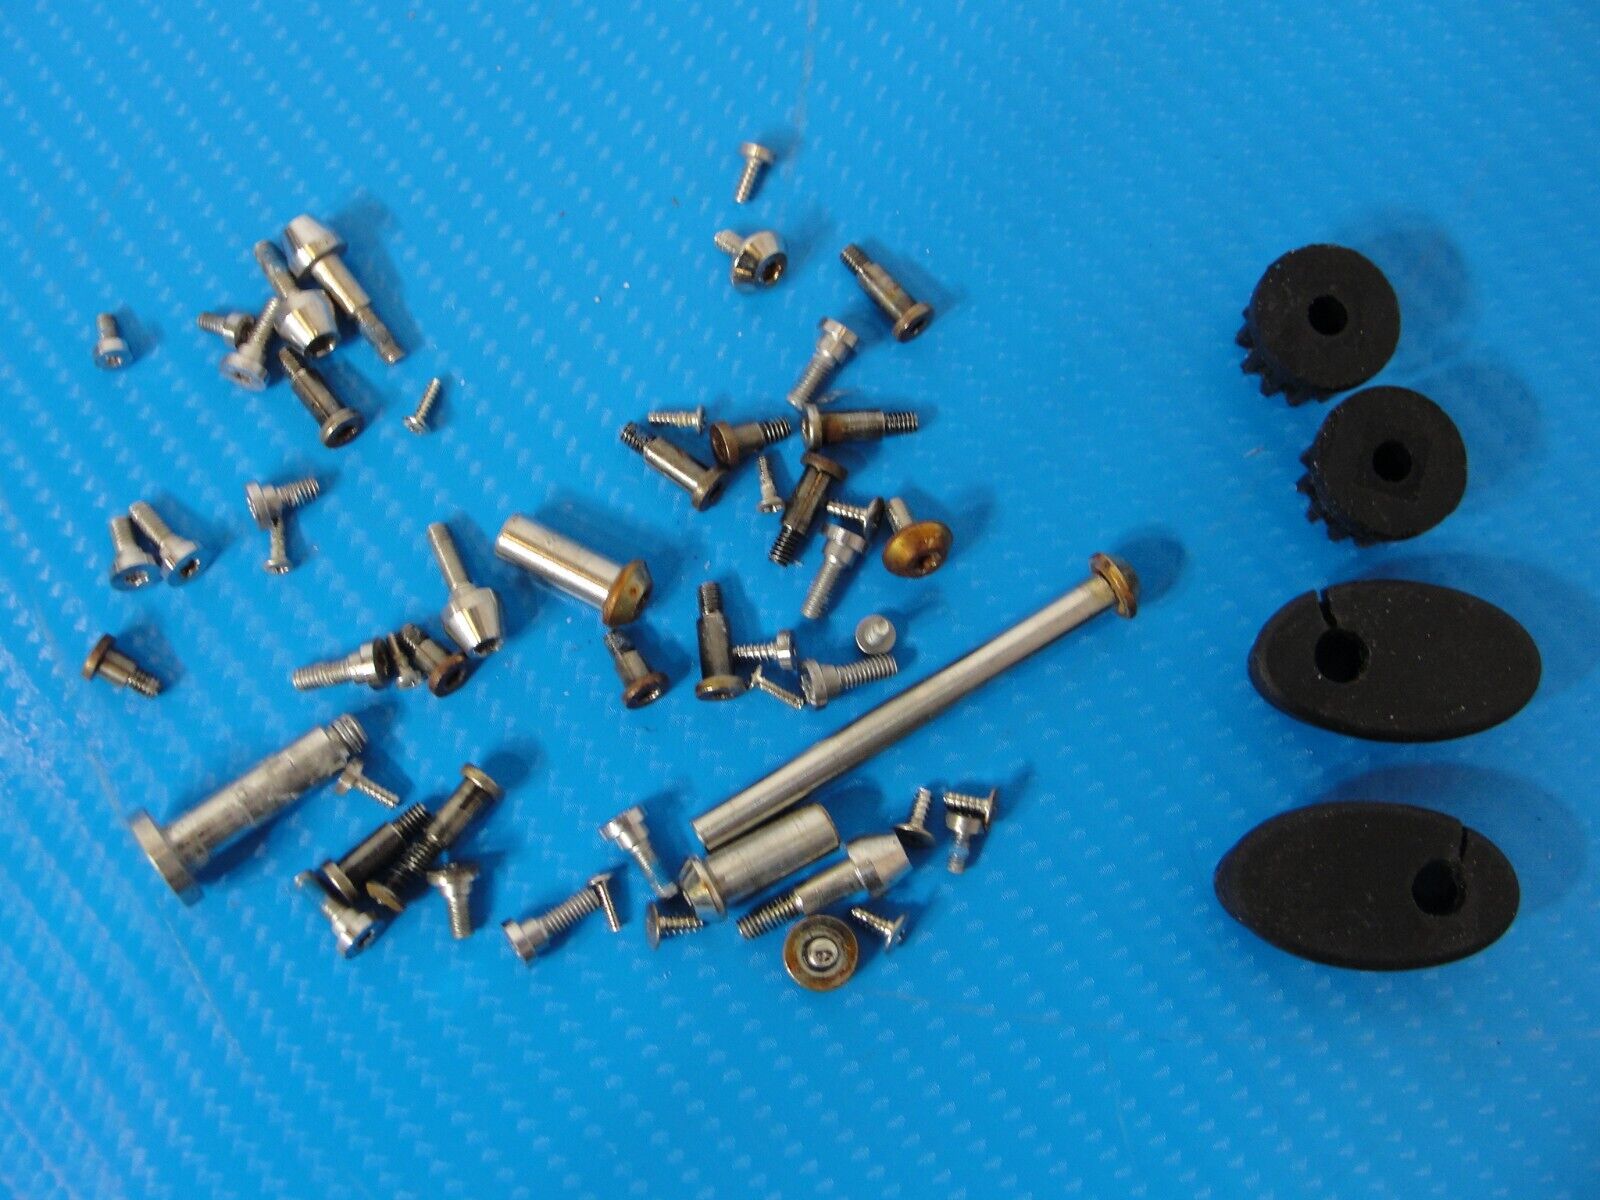 DJI Inspire 1 Drone Screws Screw Set Kit and Rubber Rubbers for Repair